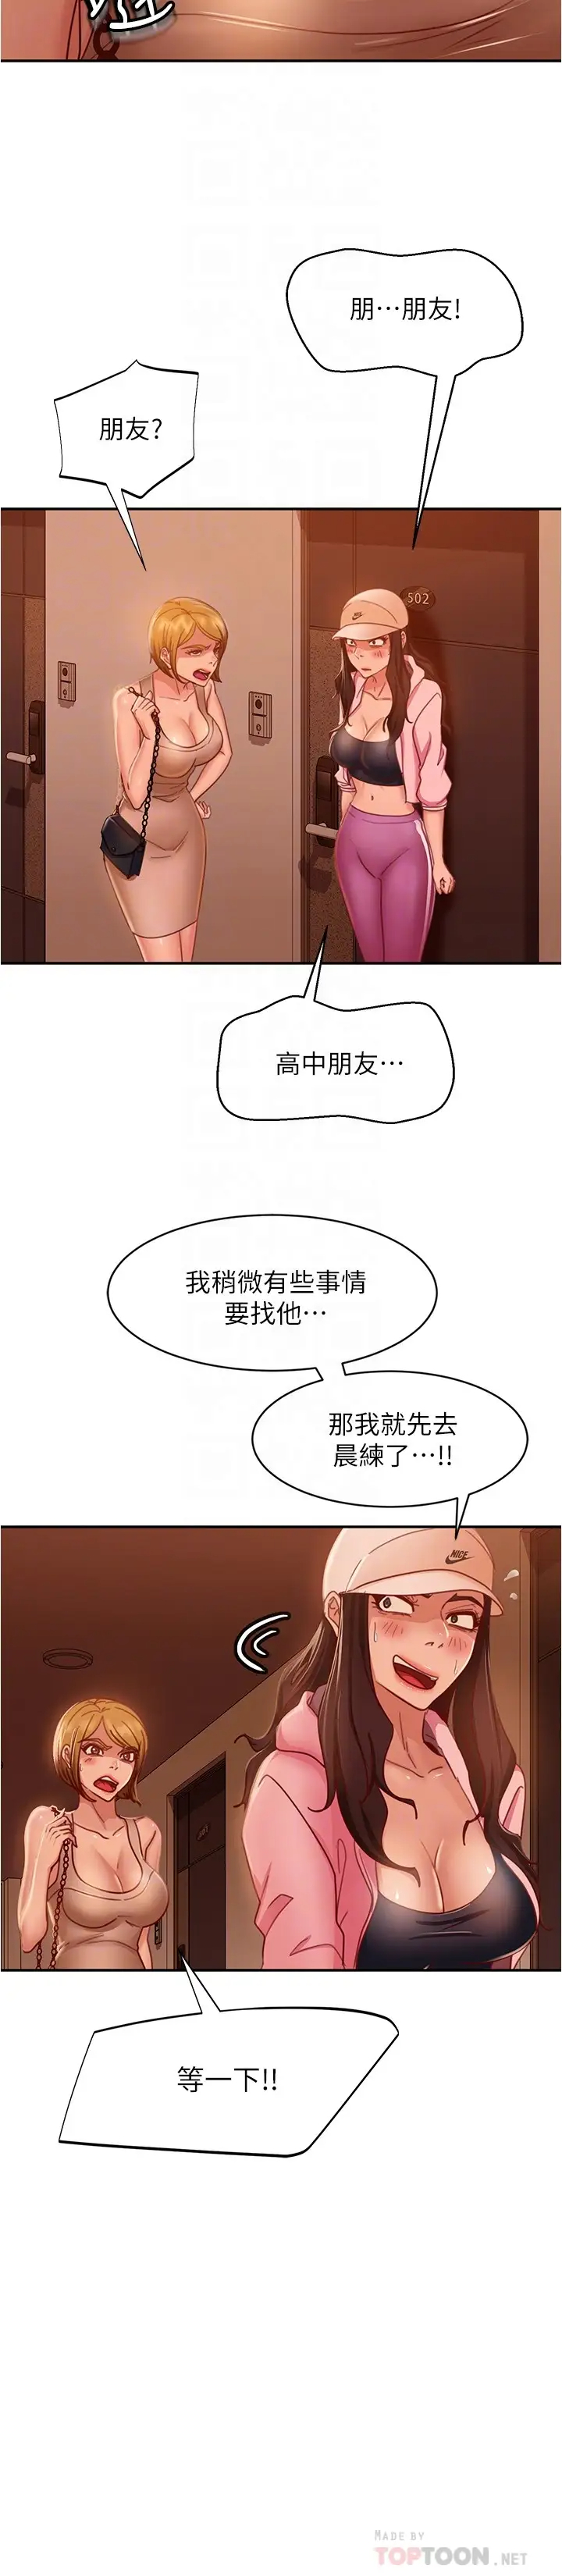 韩国污漫画 不良女房客 第21话一招就让渣男现形! 8